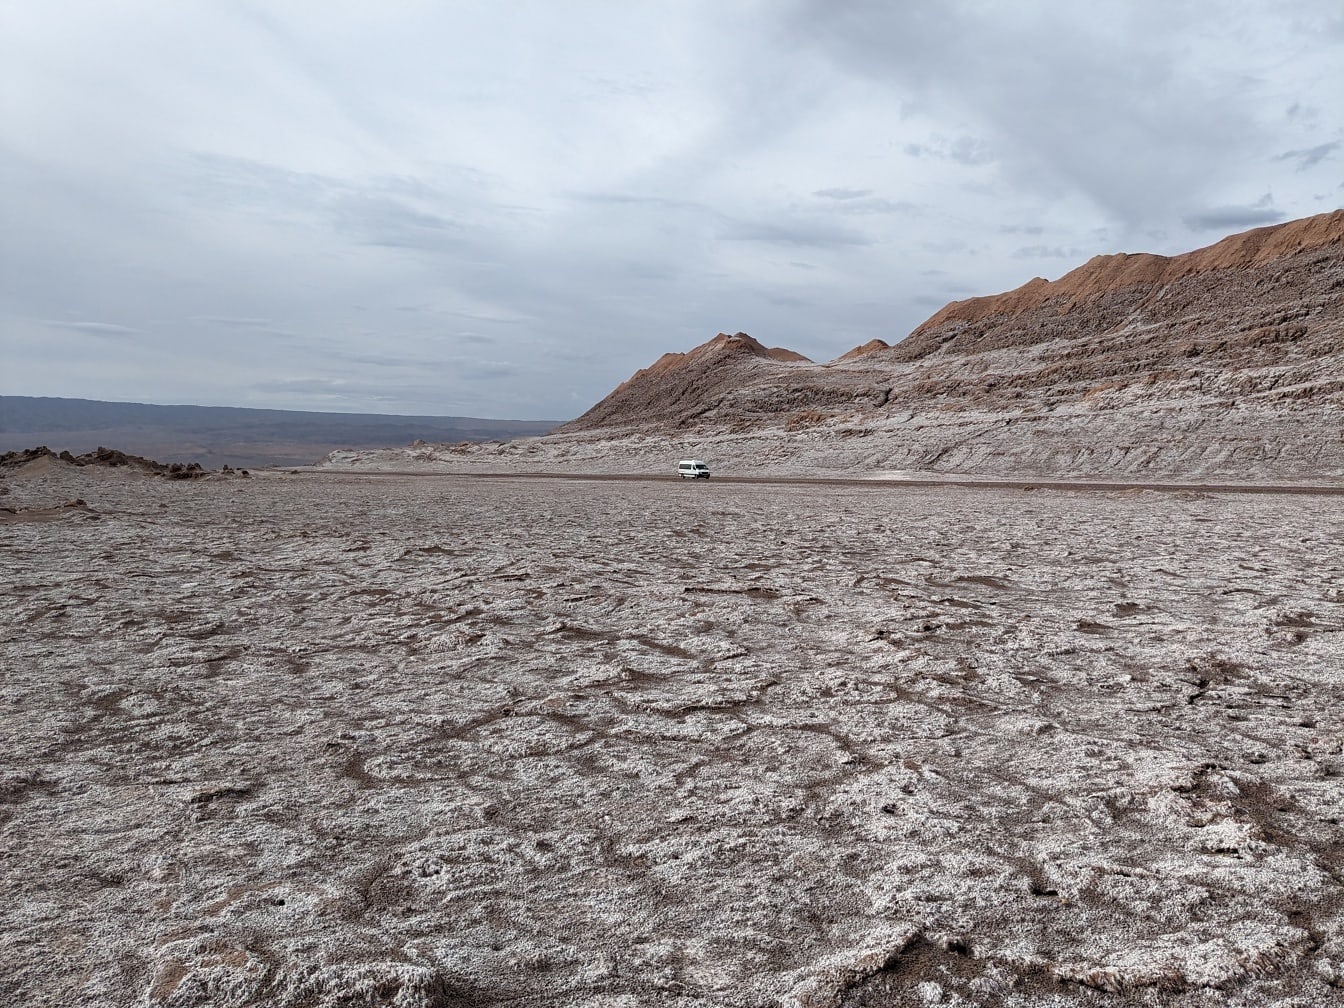 Şili’de Ay vadisi olarak bilinen kuru bir çölde araba sürmek